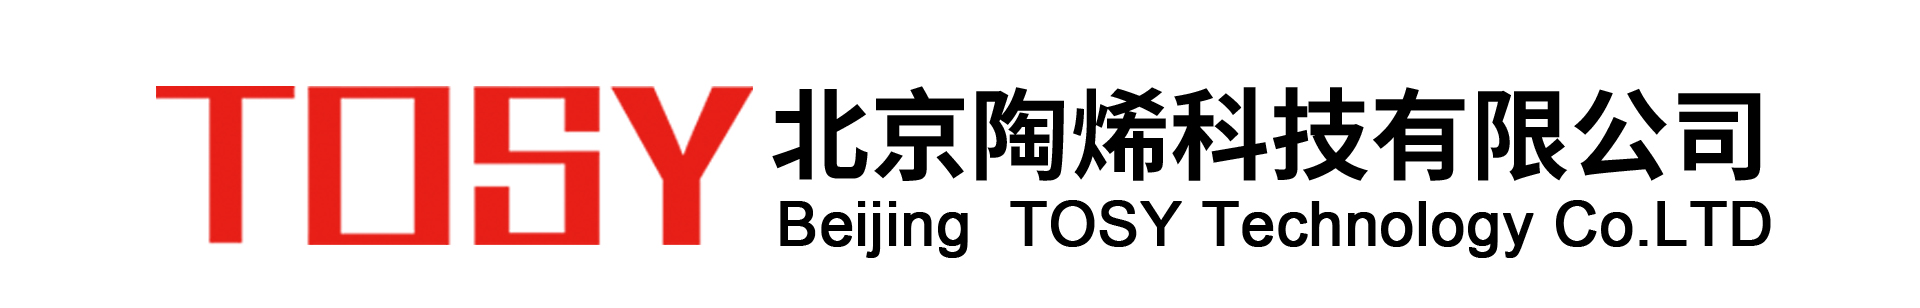 北京陶烯科技有限公司